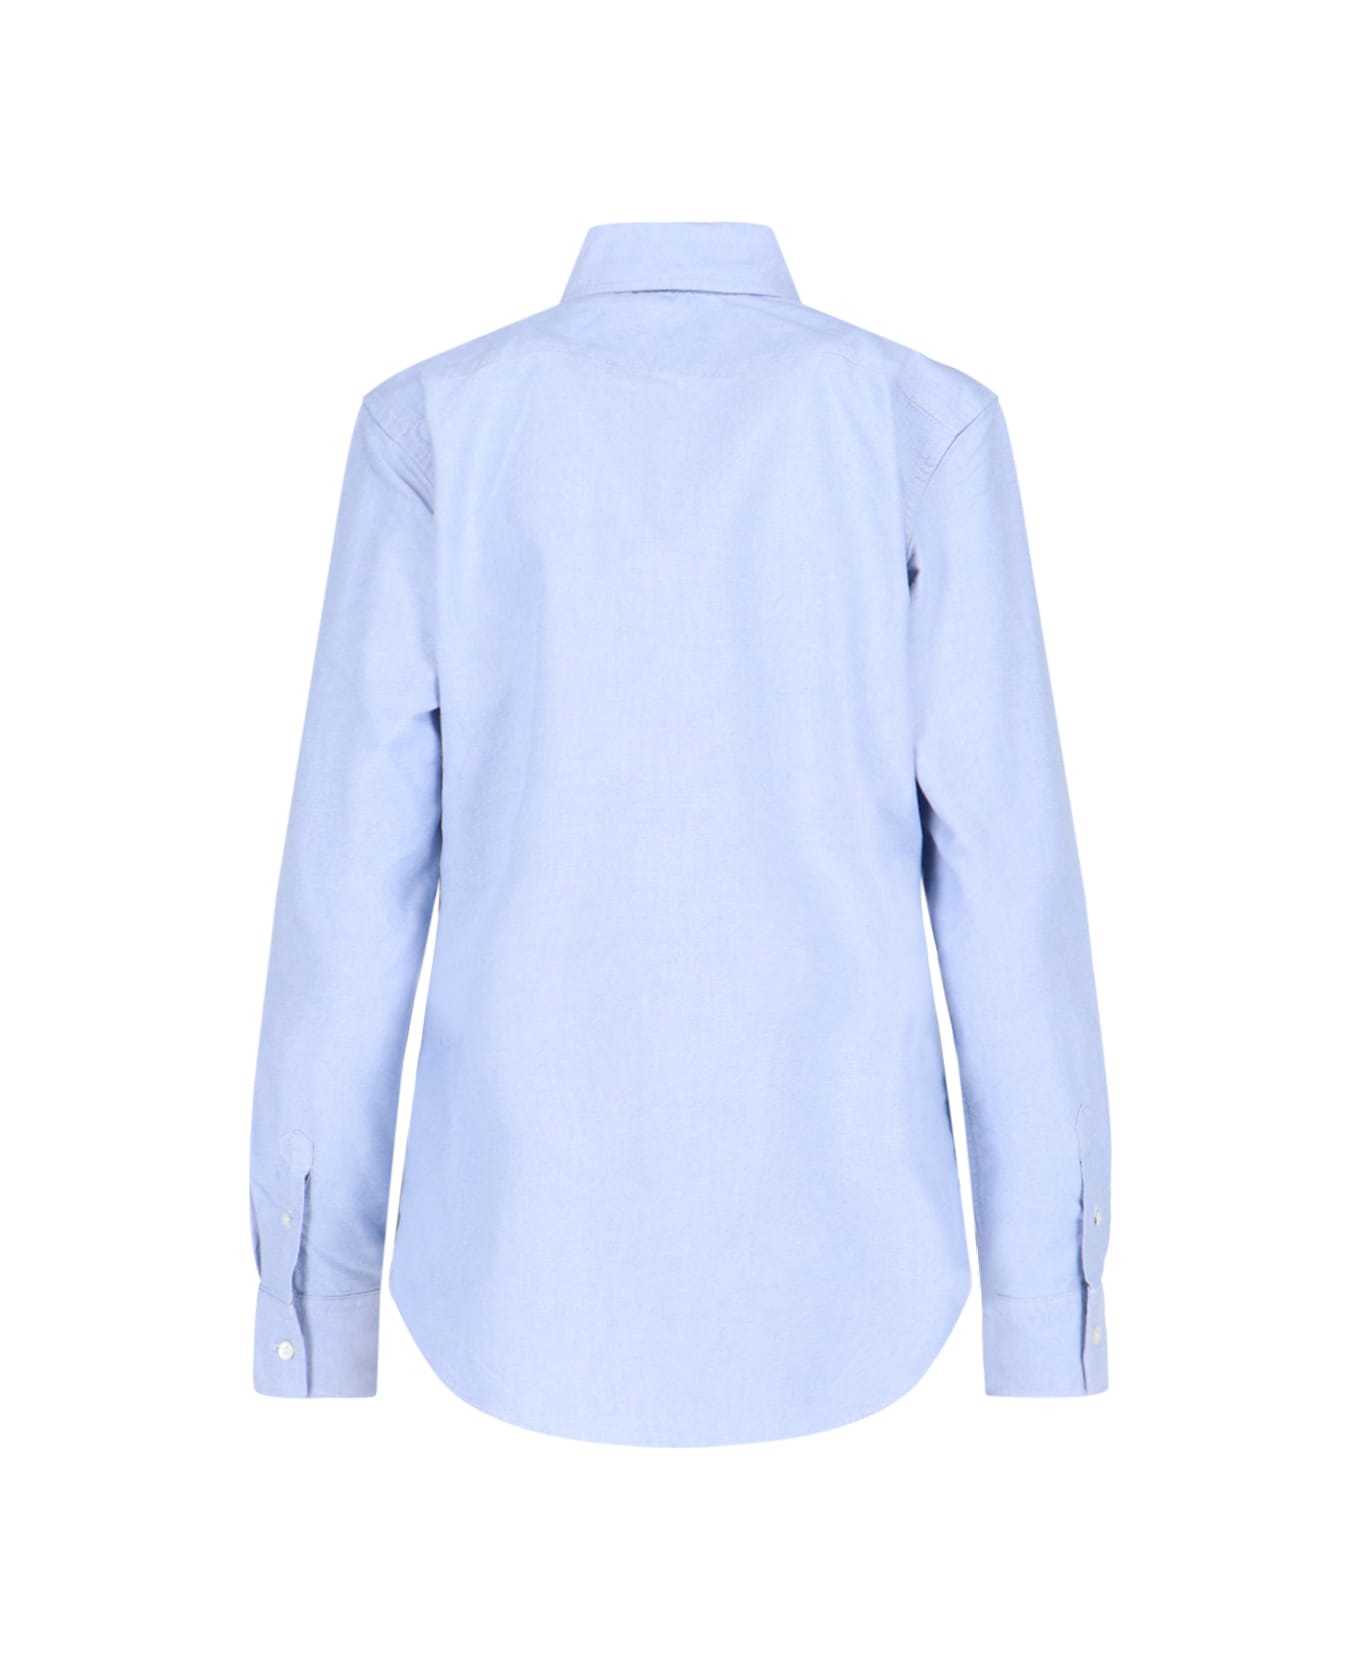 Polo Ralph Lauren Oxford Logo Shirt - Light Blue シャツ